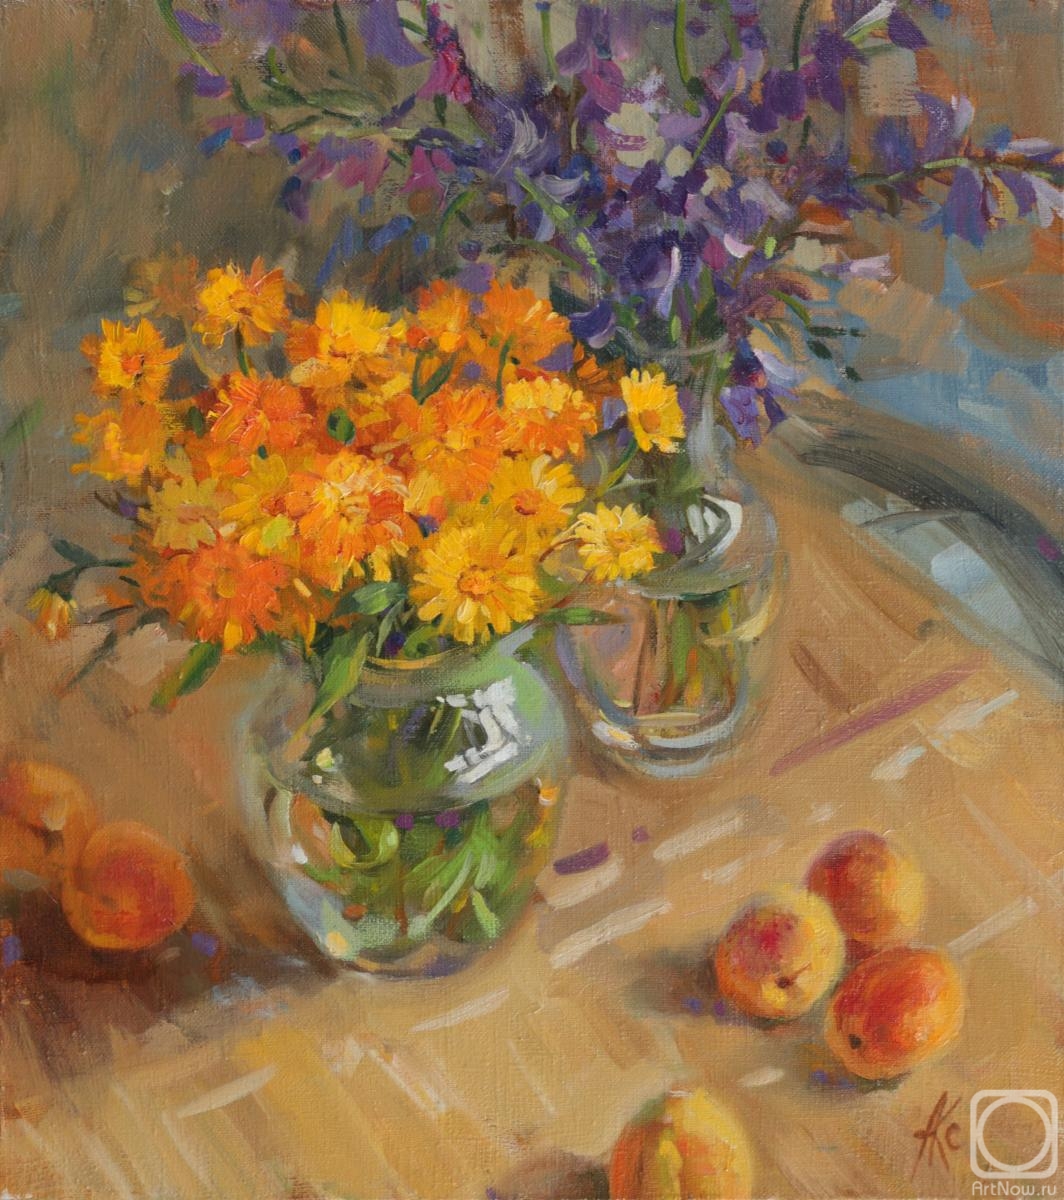 Averina Kseniya. Flowers and apricots